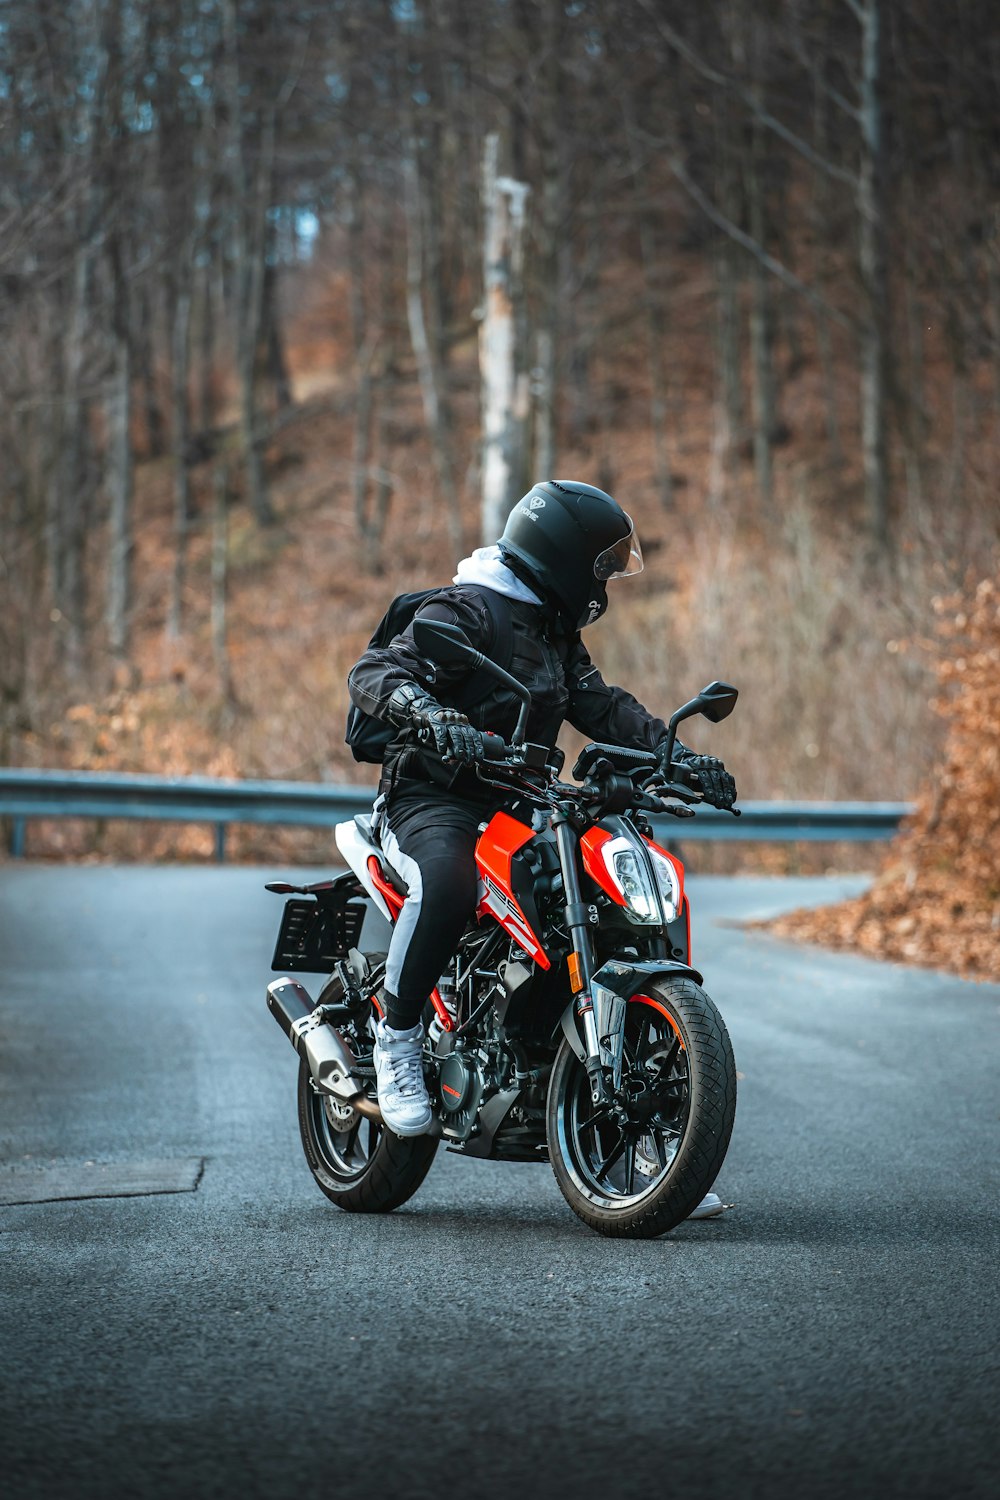 homem na jaqueta preta que monta a motocicleta laranja e preta na estrada durante o dia